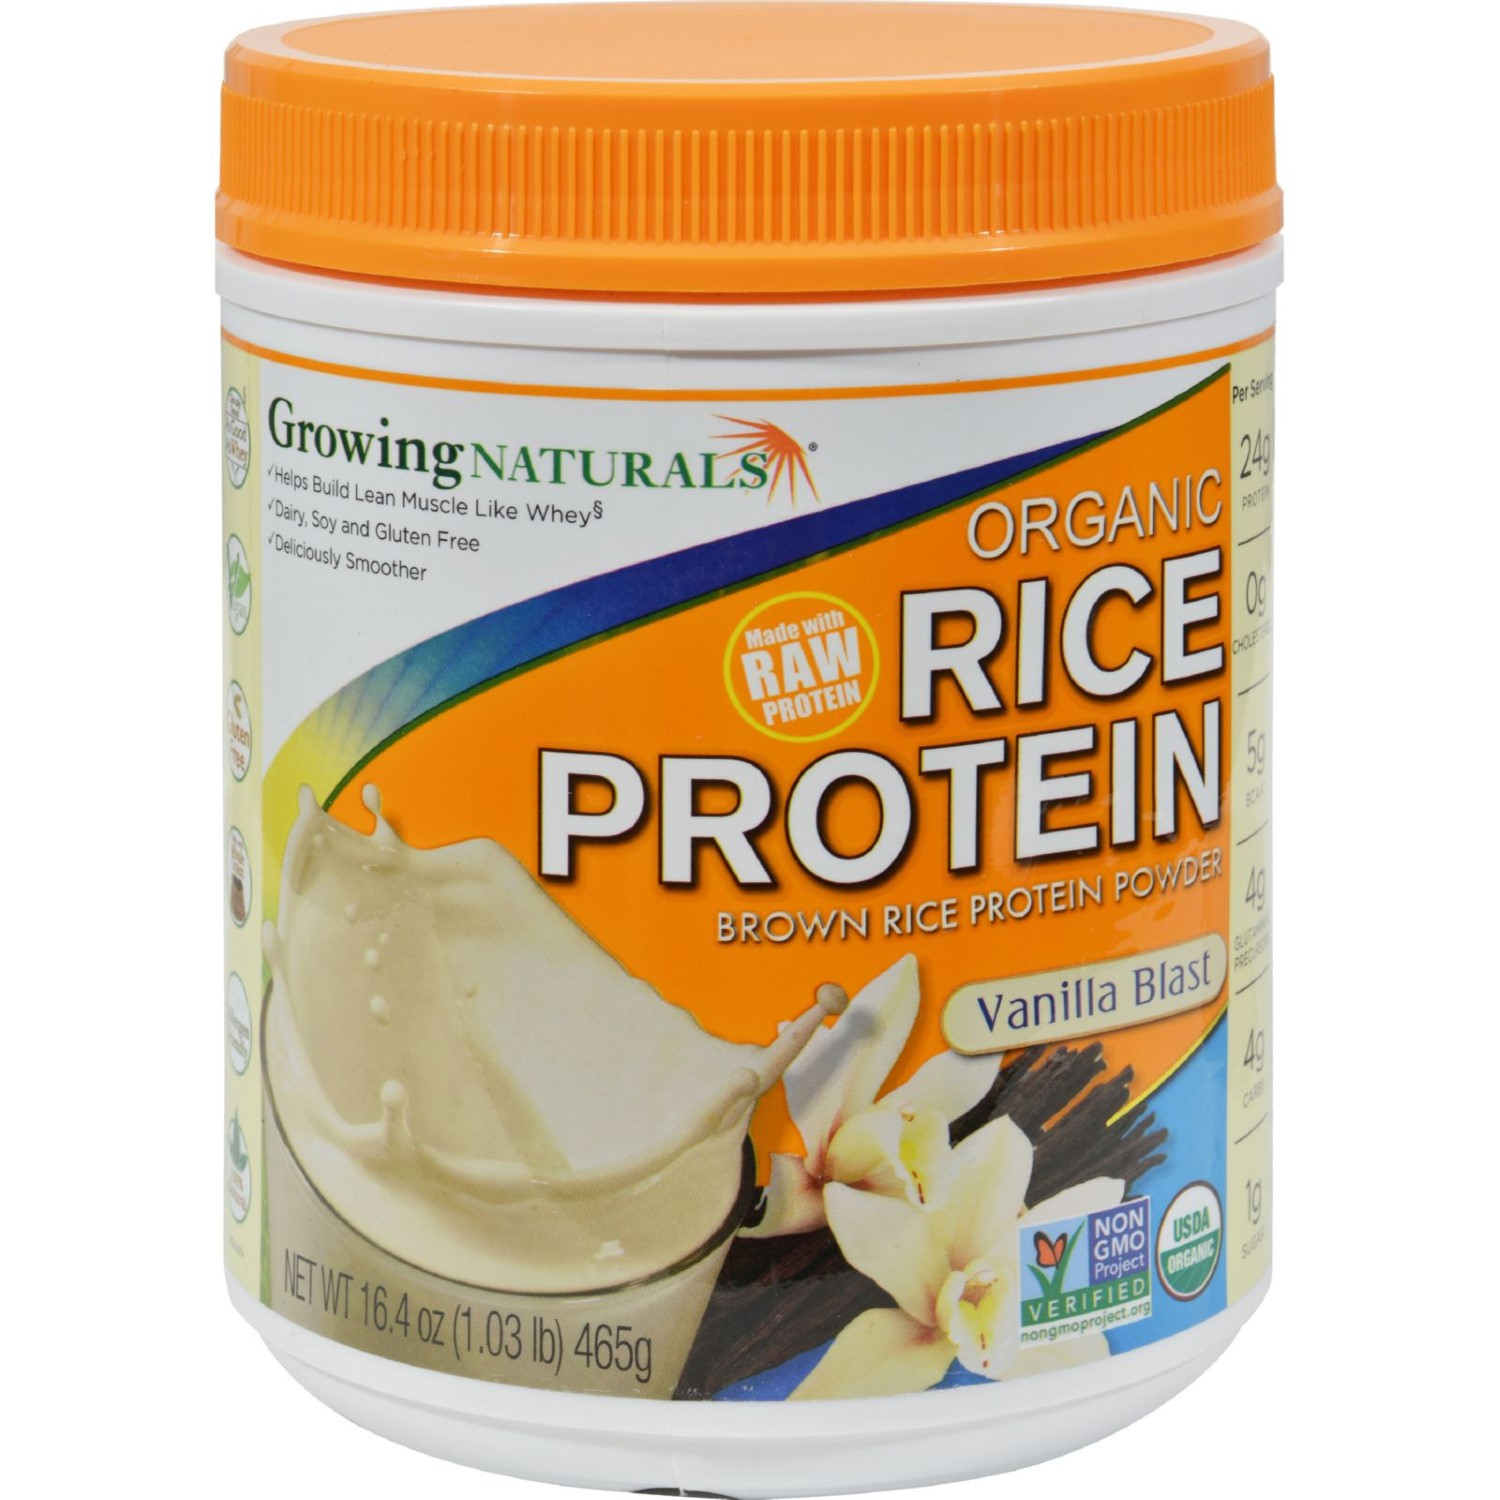 Organic Brown Rice Protein Powder
 Growing Naturals RAW Organic Rice Protein Isolate Powder